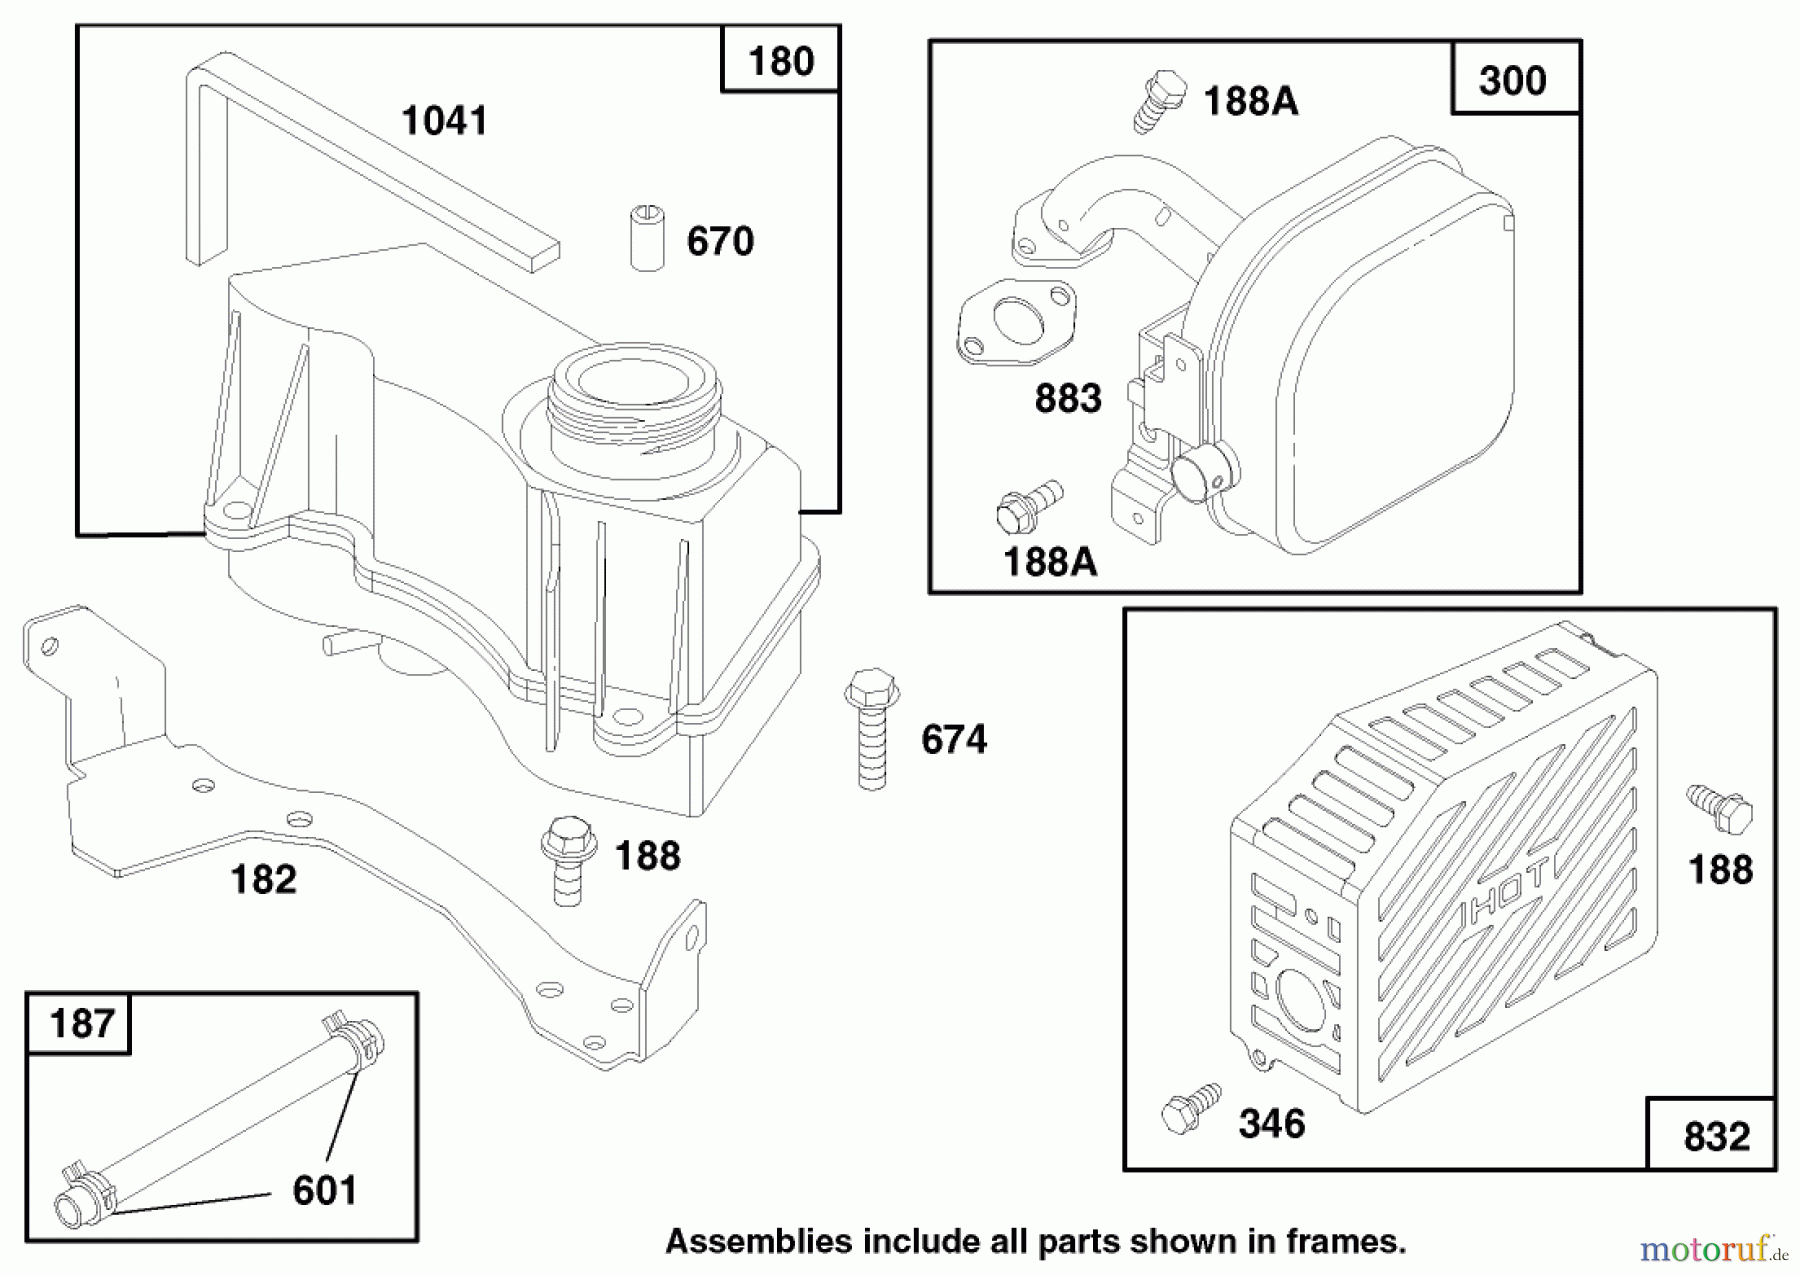  Toro Neu Mowers, Walk-Behind Seite 1 20482 - Toro Super Recycler Mower, 1997 (790000001-799999999) ENGINE GTS 150 (MODEL NO. 20482 ONLY) #6